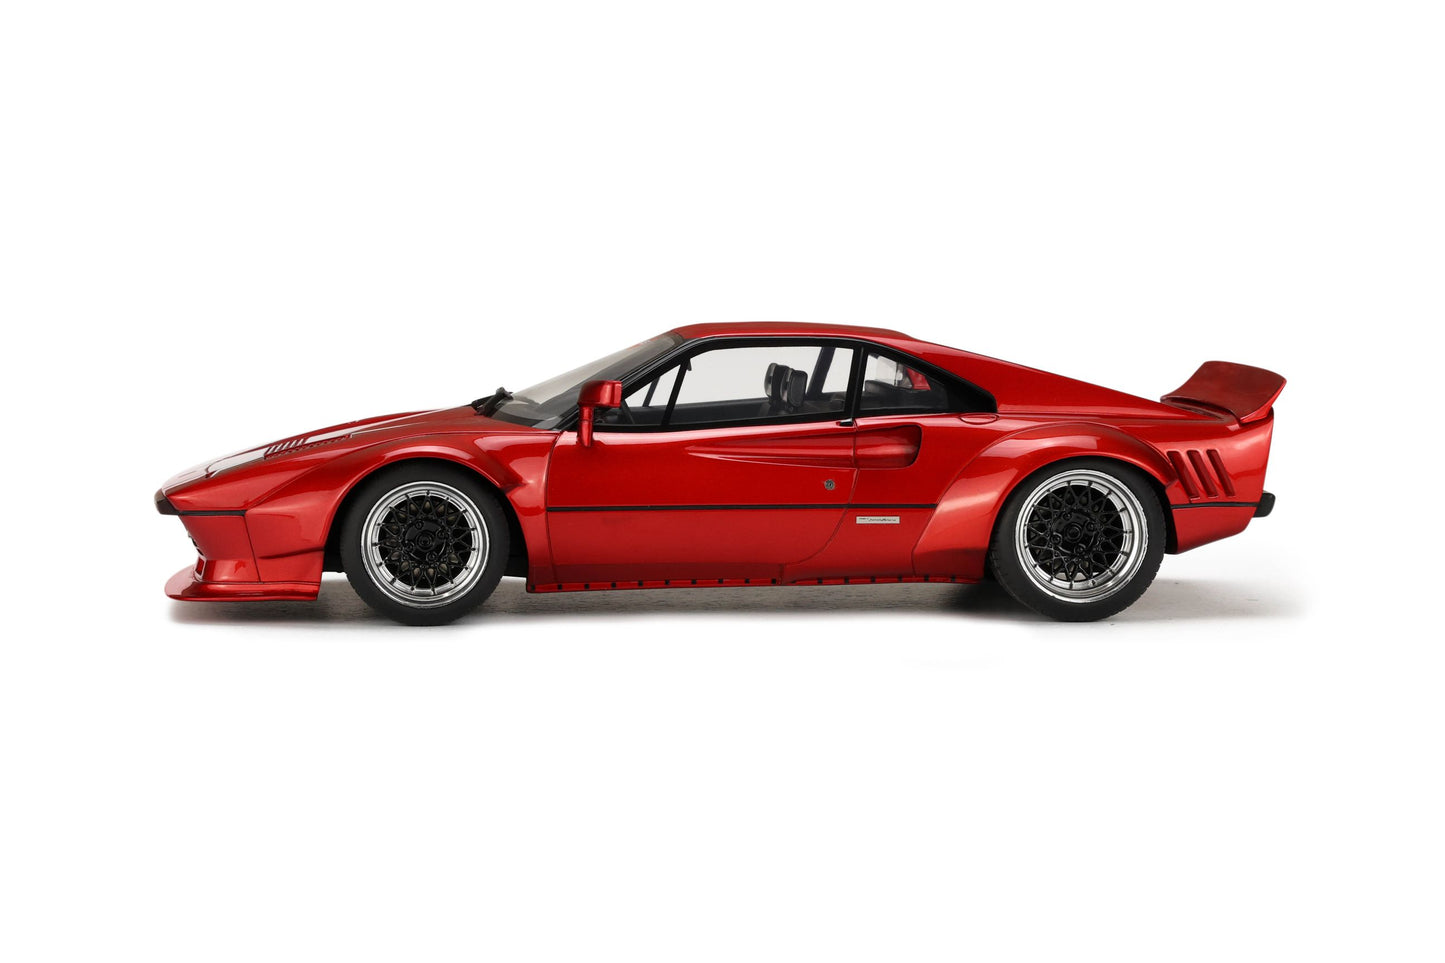 GT Spirit - Khyzyl Saleem Ferrari 288 GTO (Candy Red) 1:18 Scale Model Car